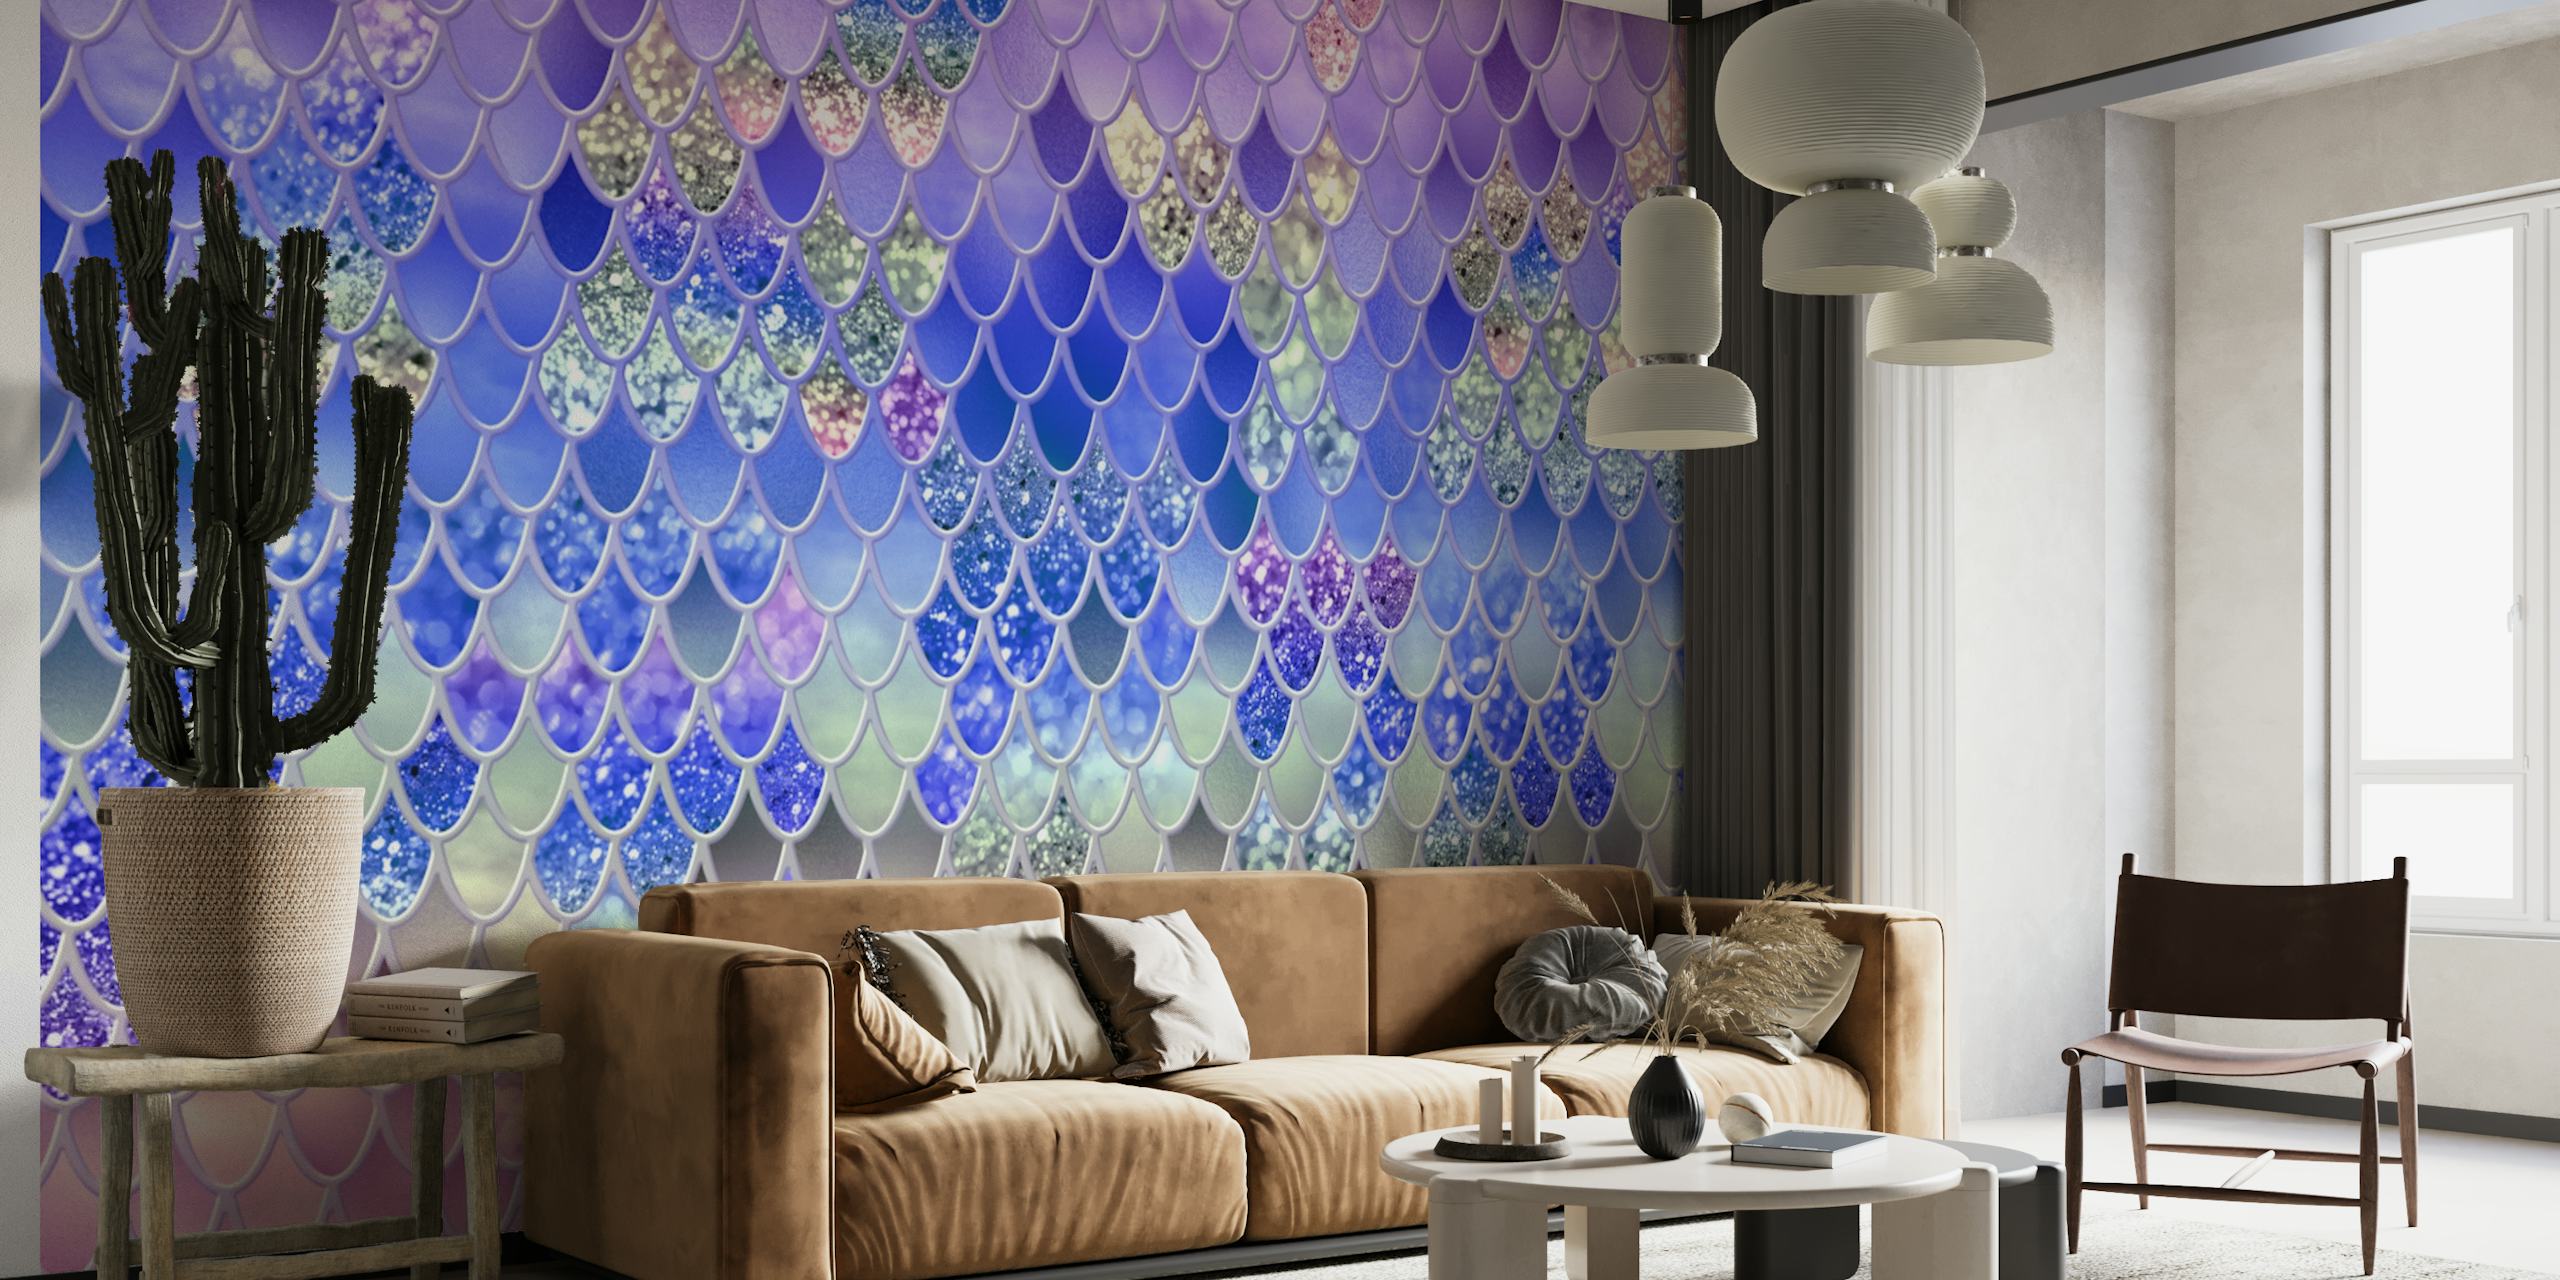 Glimrende havfrueskalamønster i lilla og blå nuancer vægmaleri